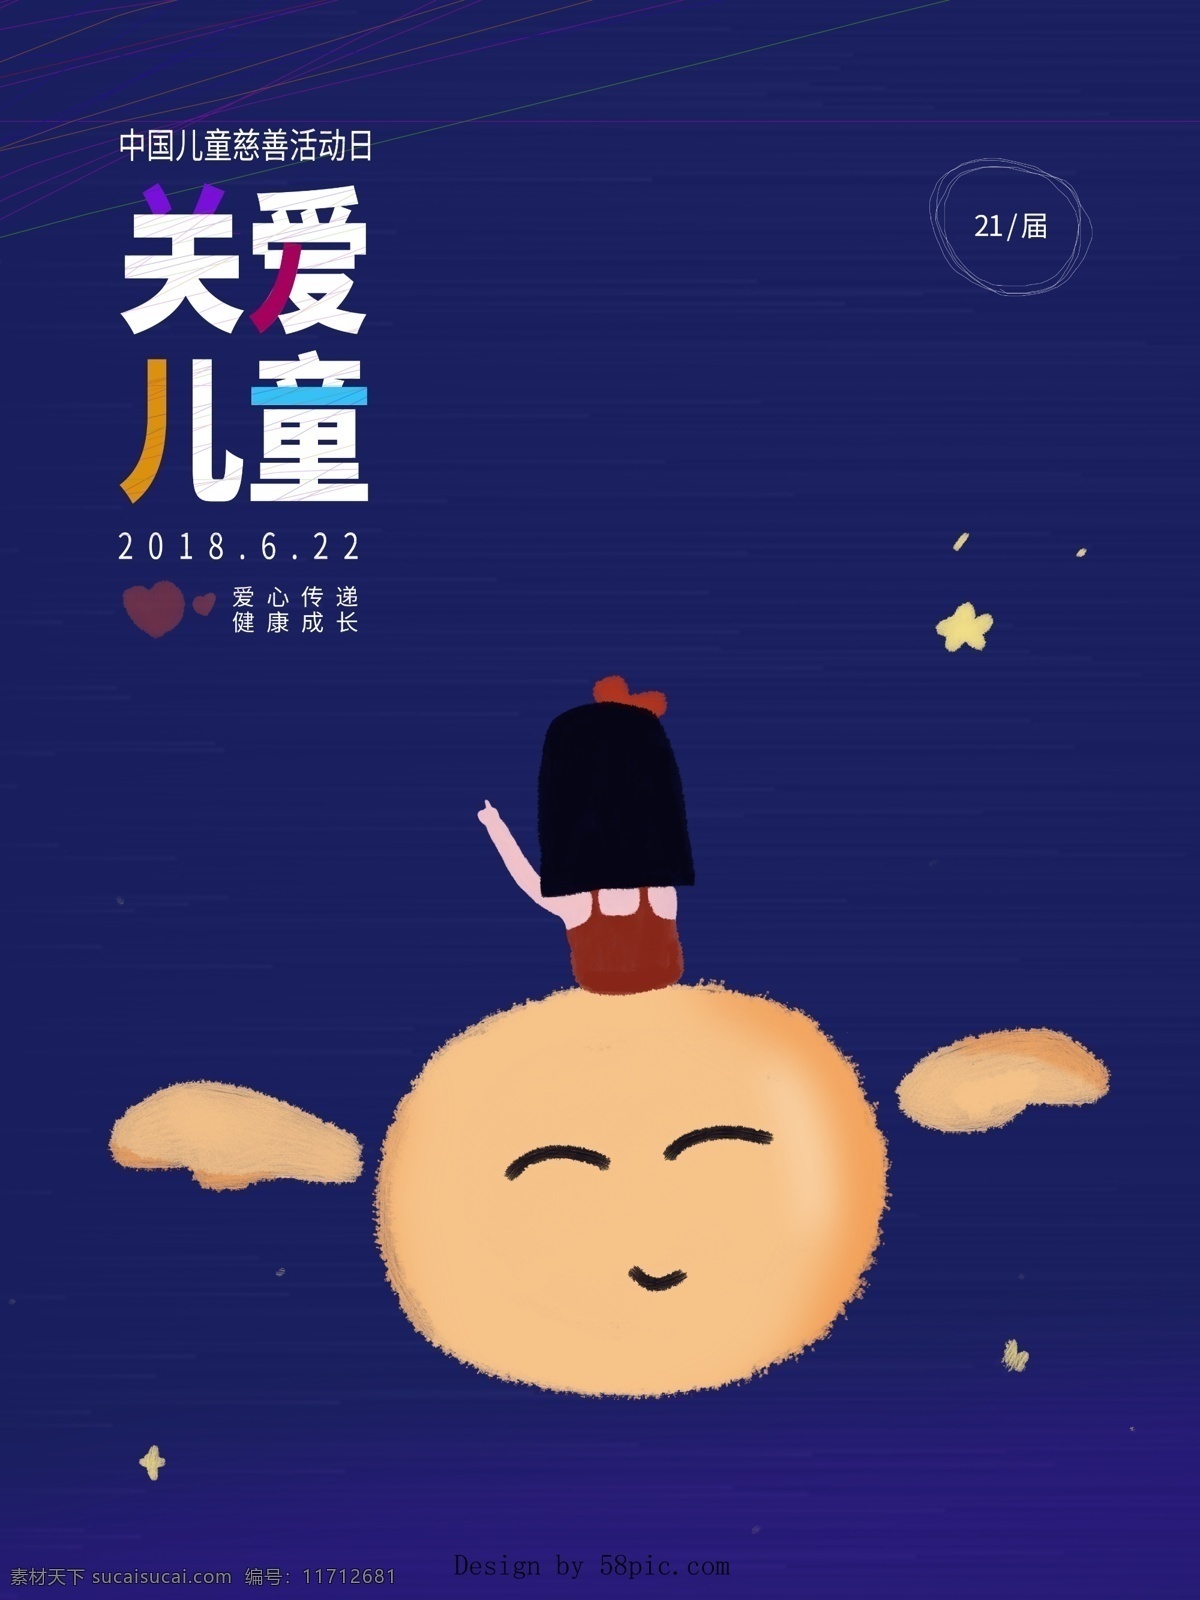 中国 儿童 慈善 活动日 关爱儿童 天使 女孩 星星 爱心 原创插画